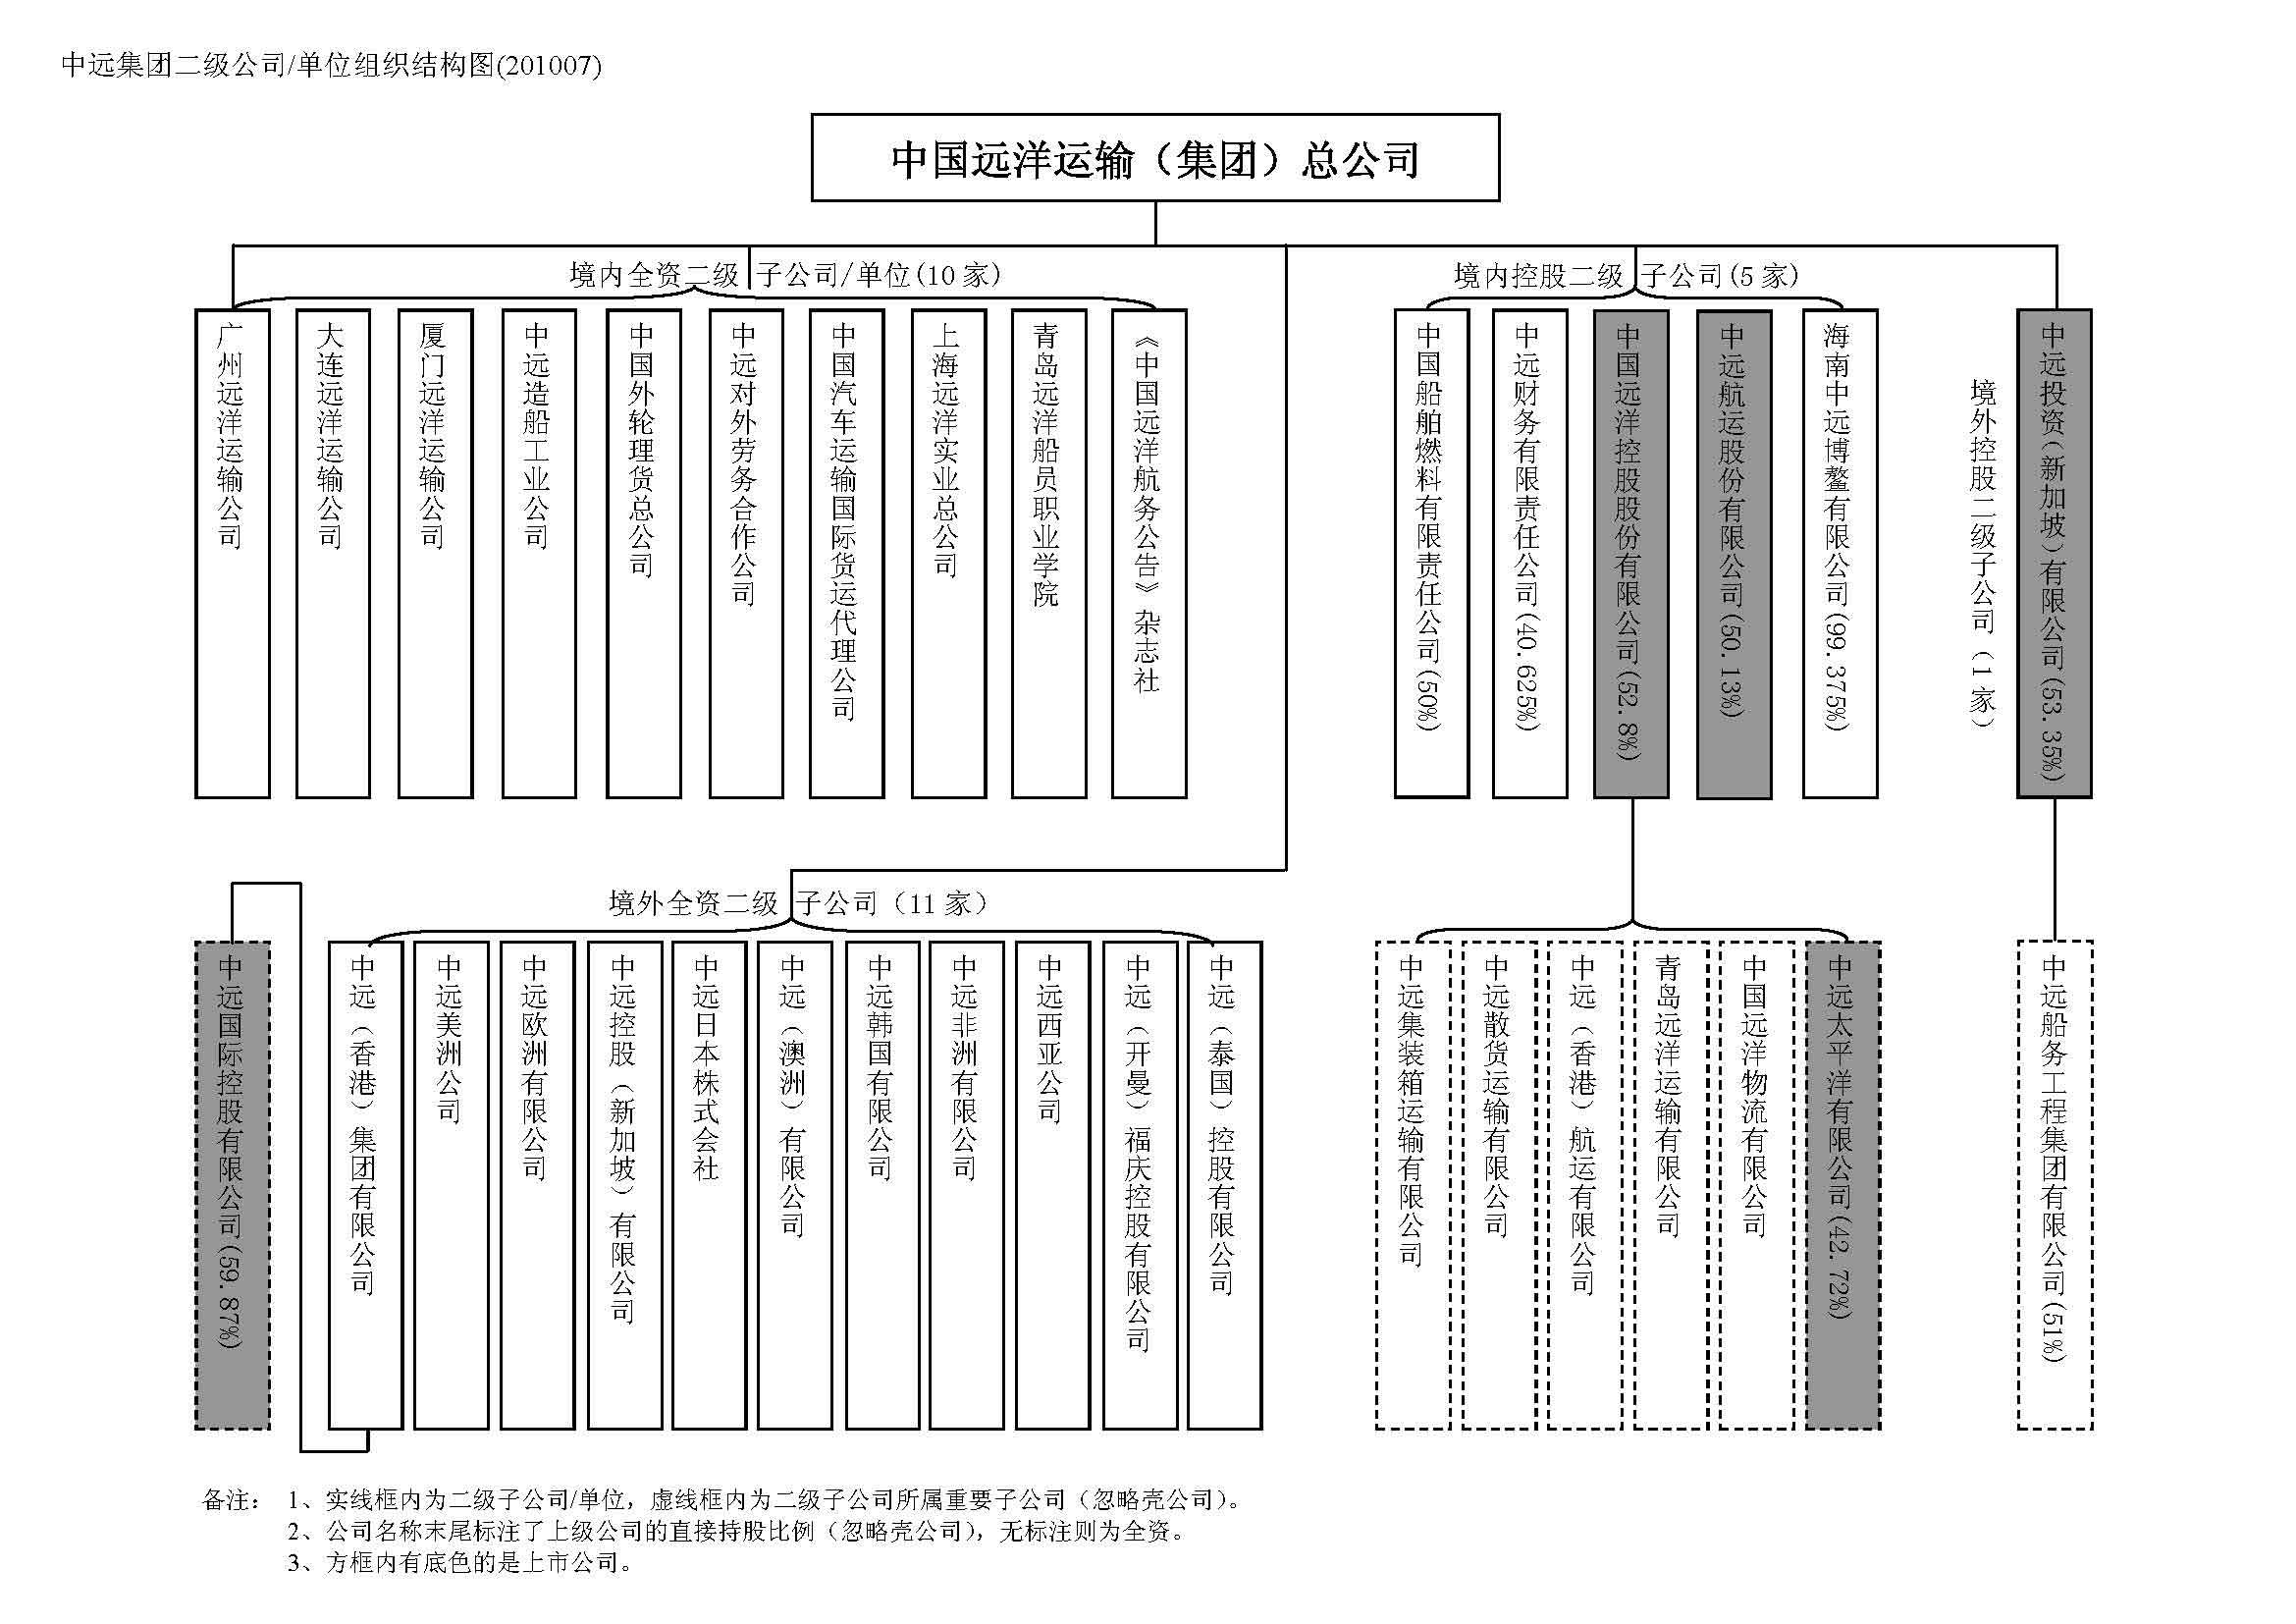 中遠集團二級公司/單位組織結構圖(2010/07)